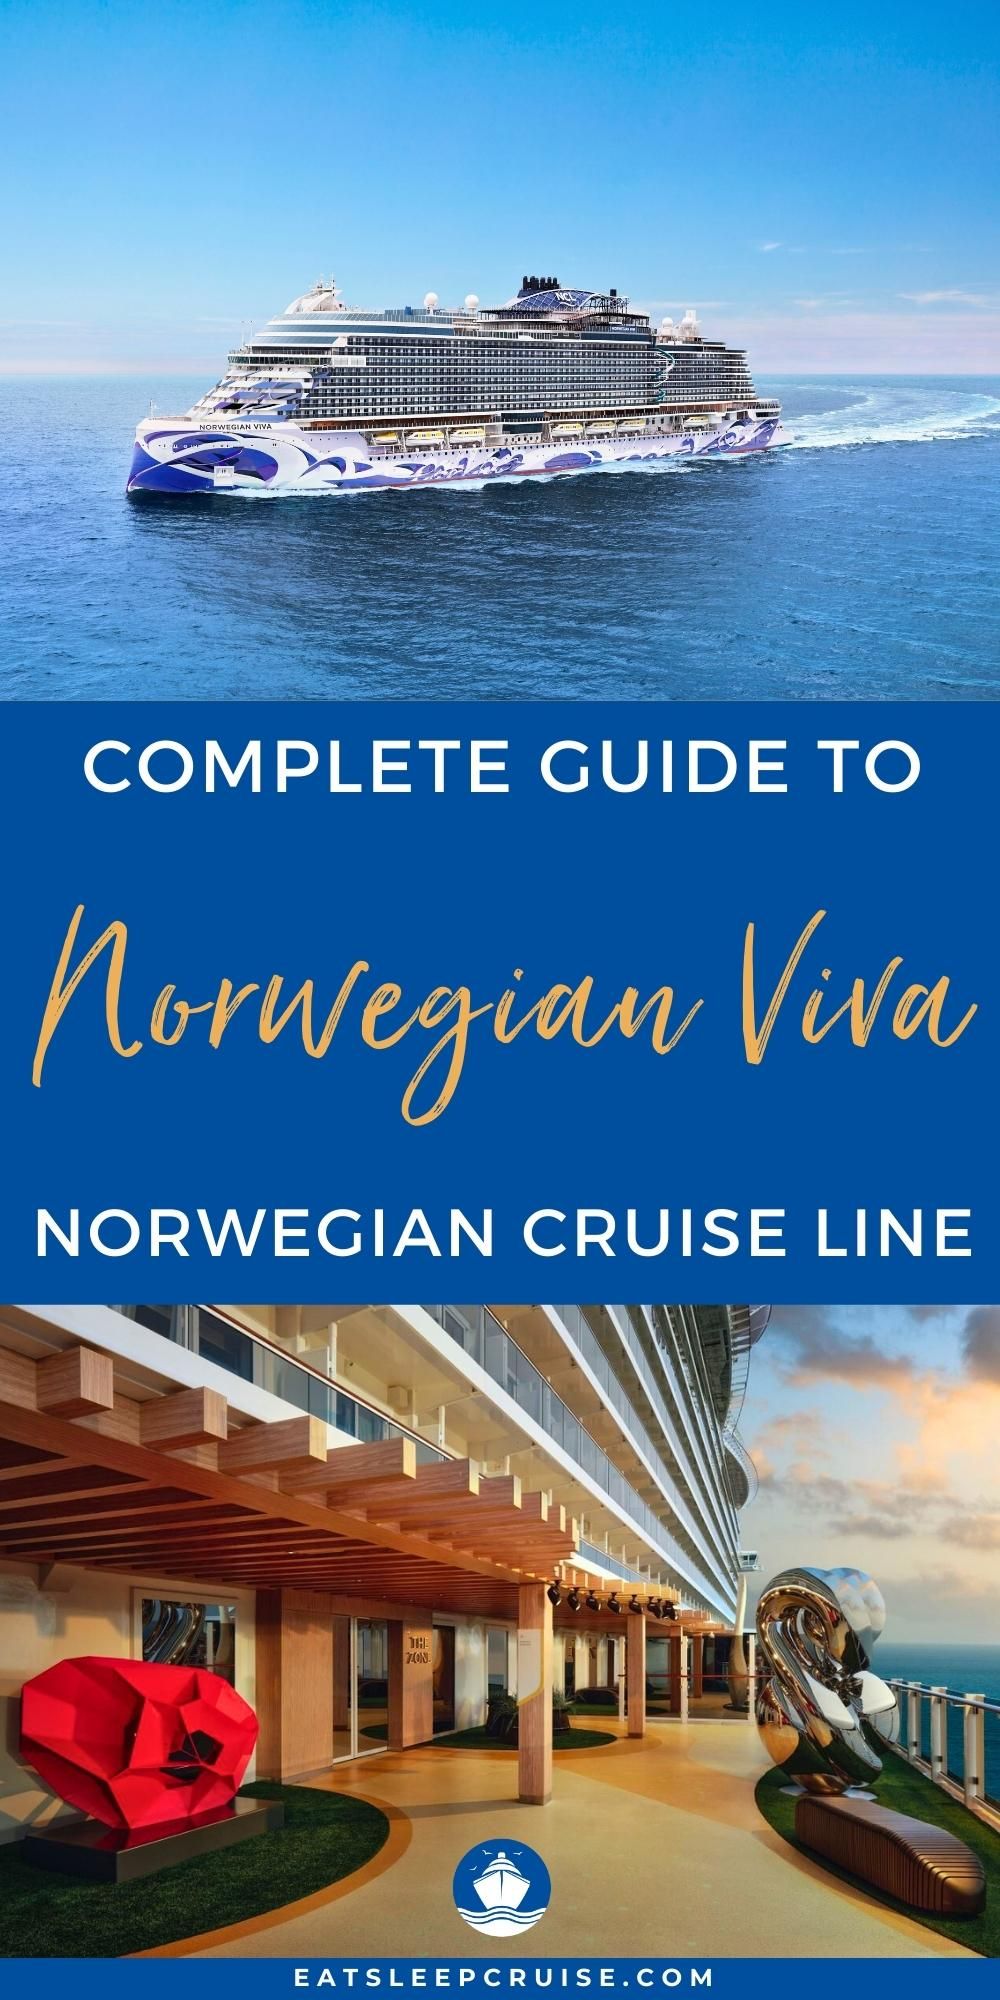 Norwegian Viva cruise ship